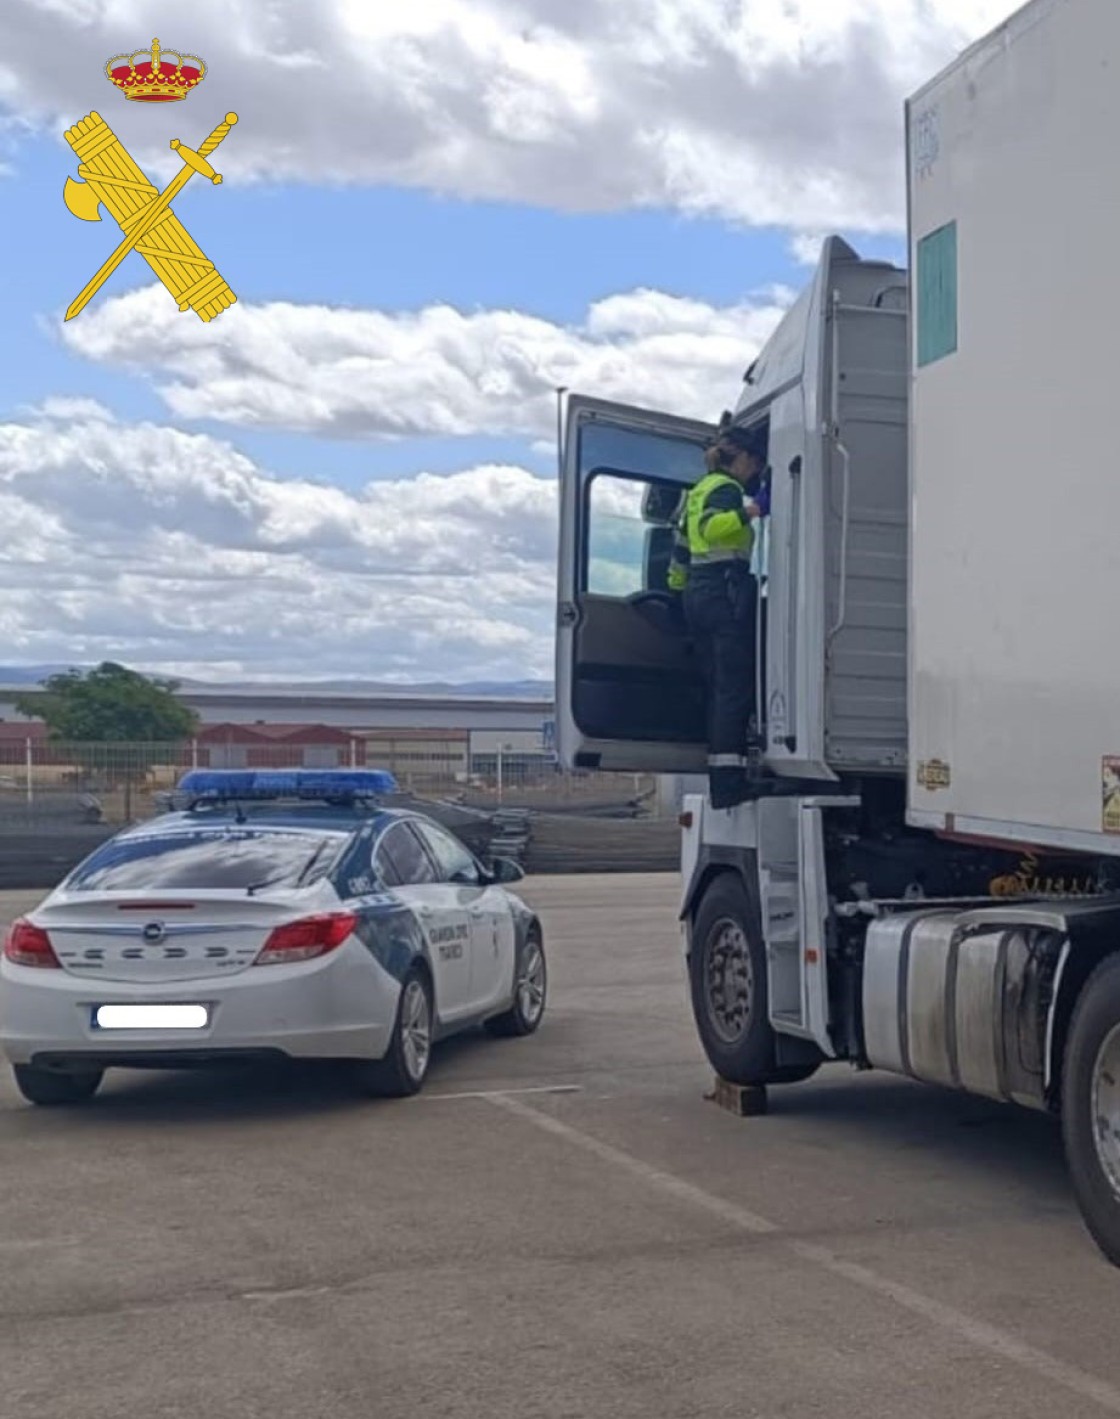 La Guardia Civil de Teruel formula 34 denuncias a conductores en un dispositivo de control del transporte realizado en la autovía A-23, término municipal de Villafranca del Campo